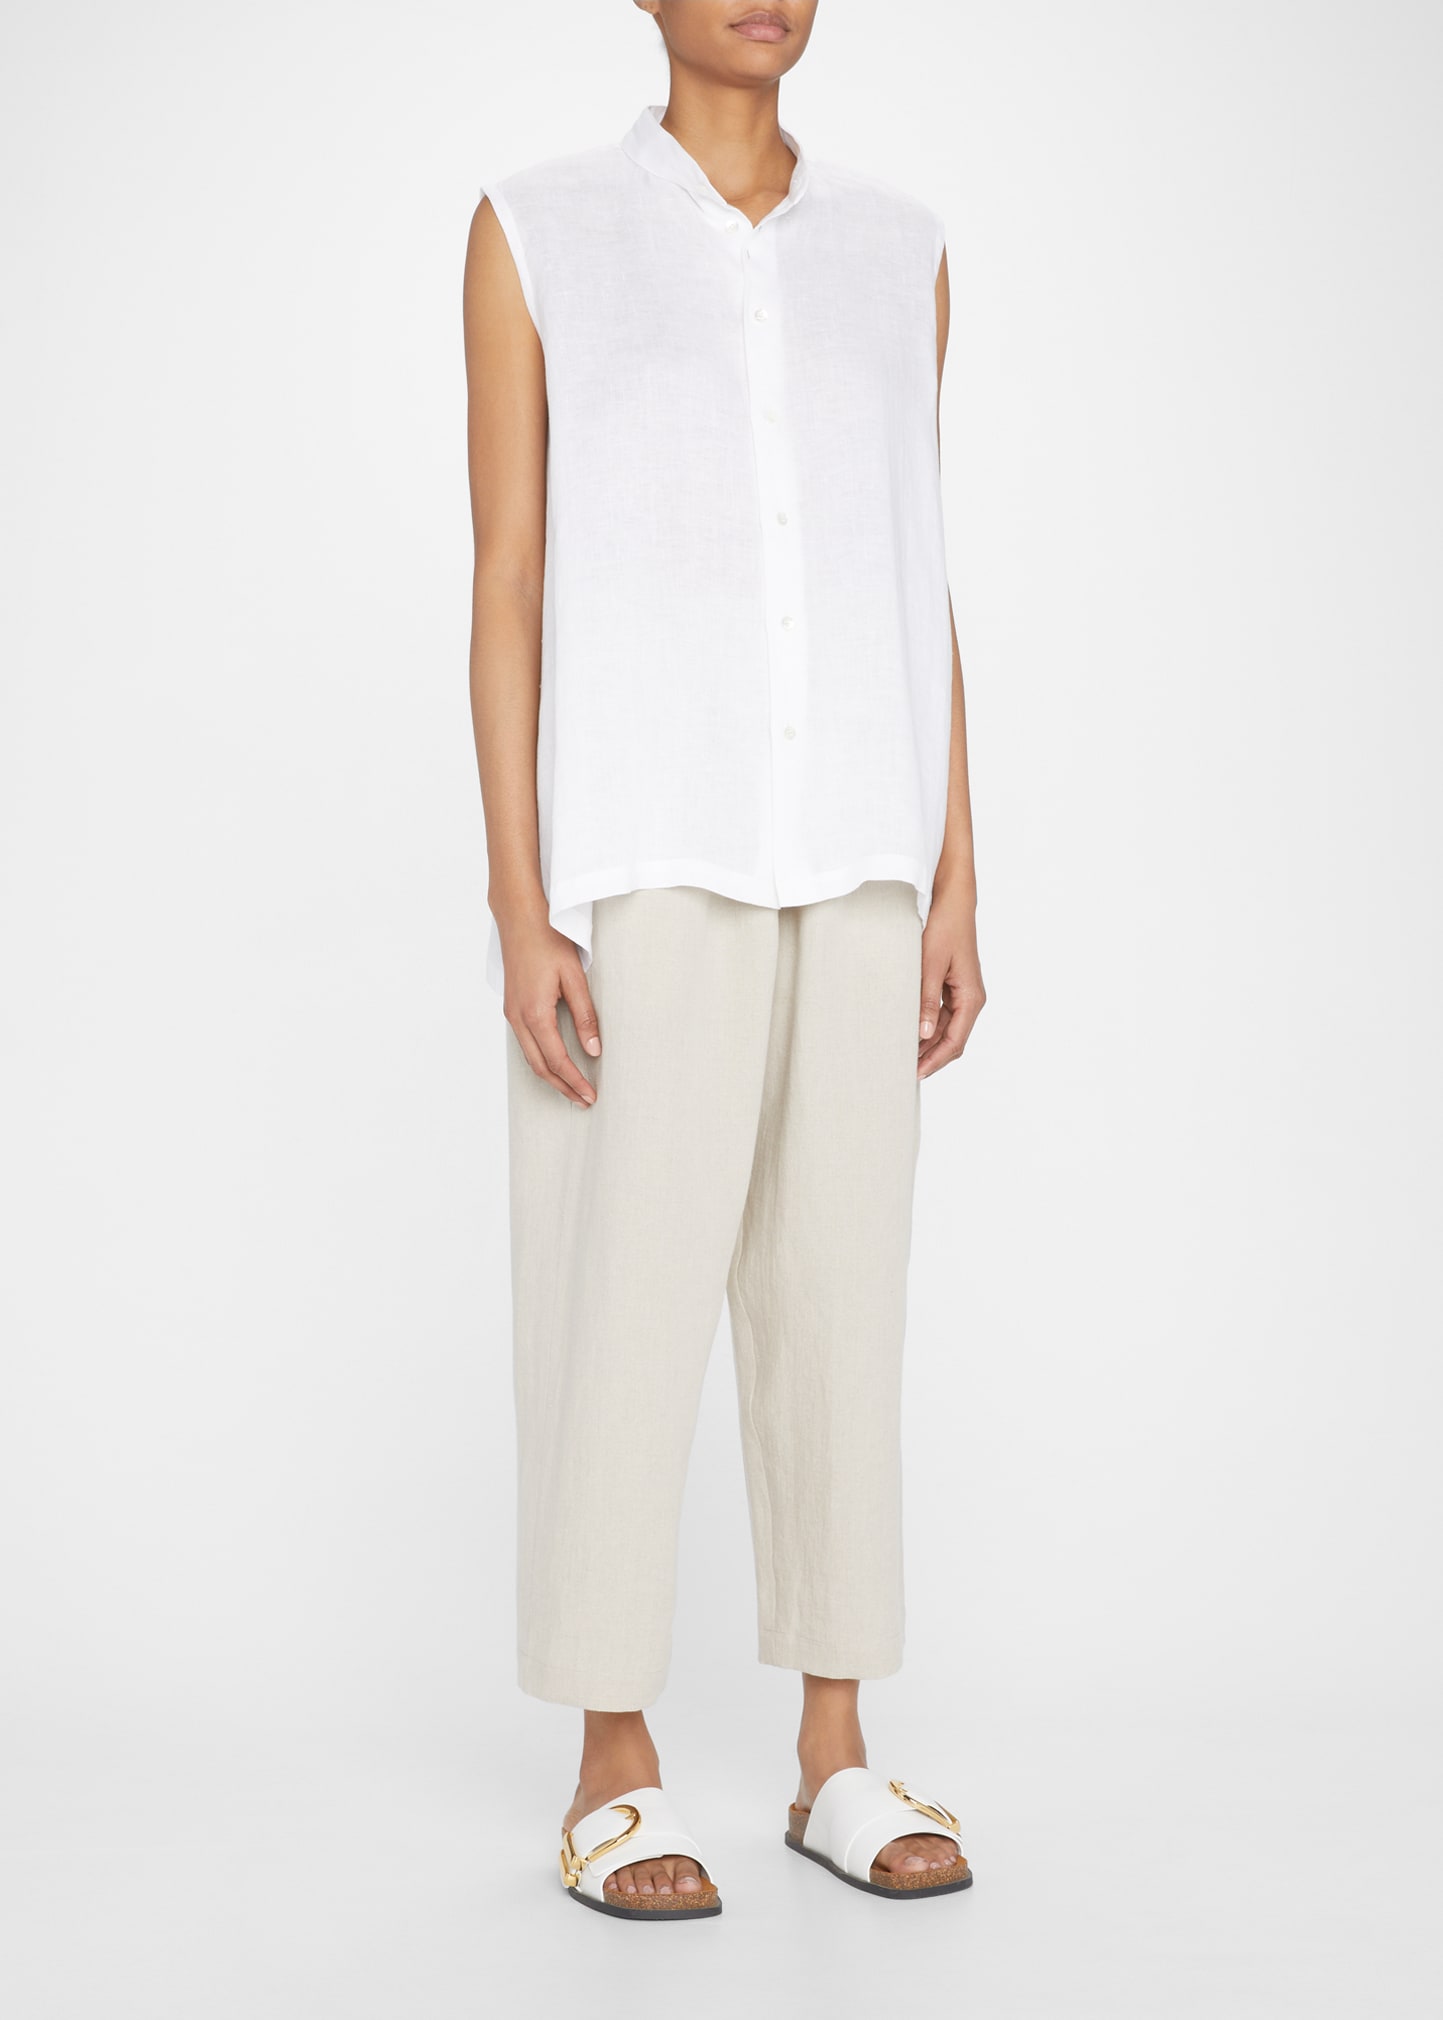 A-line Collarless Sleeveless Linen Shirt